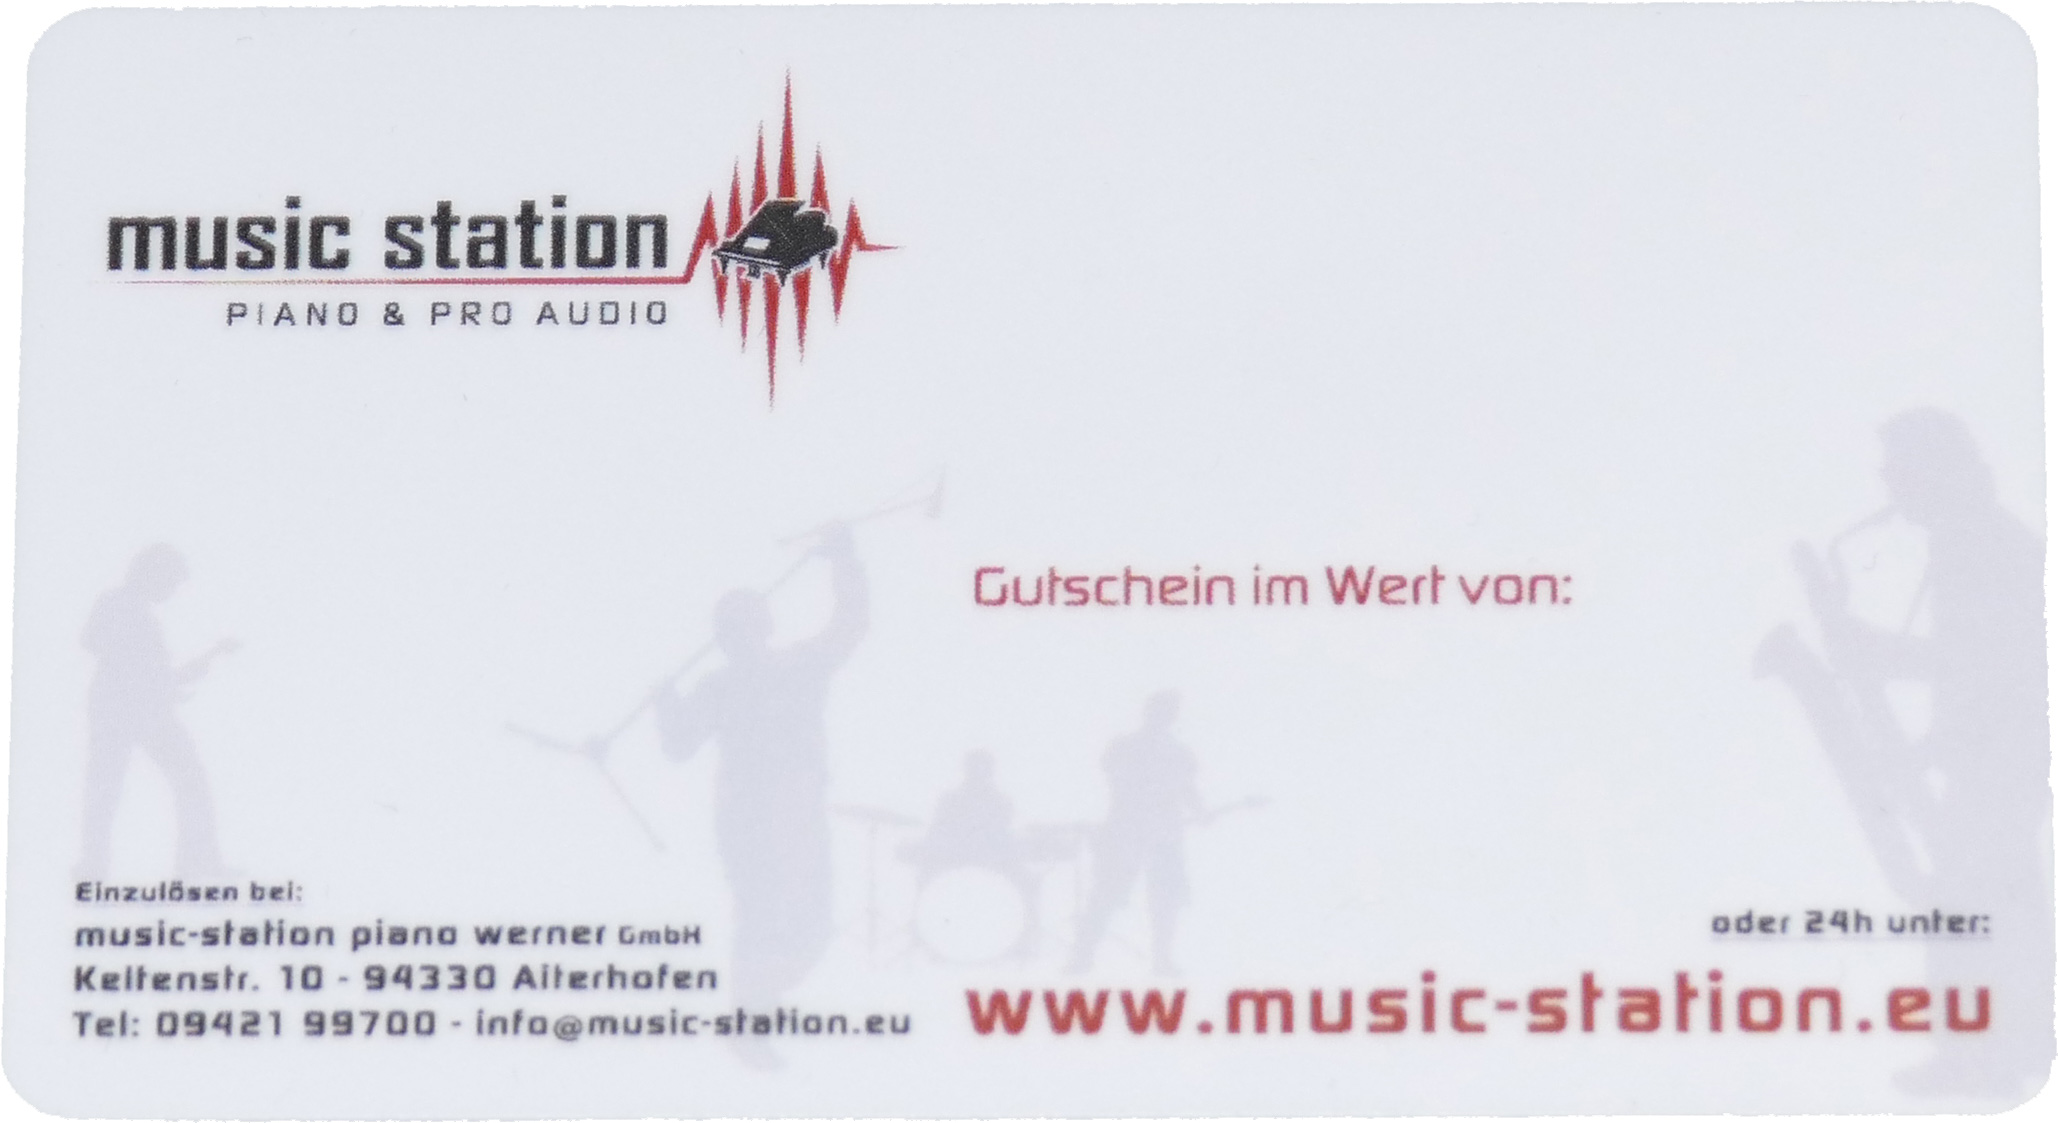 Music Station Gutschein 75 Euro